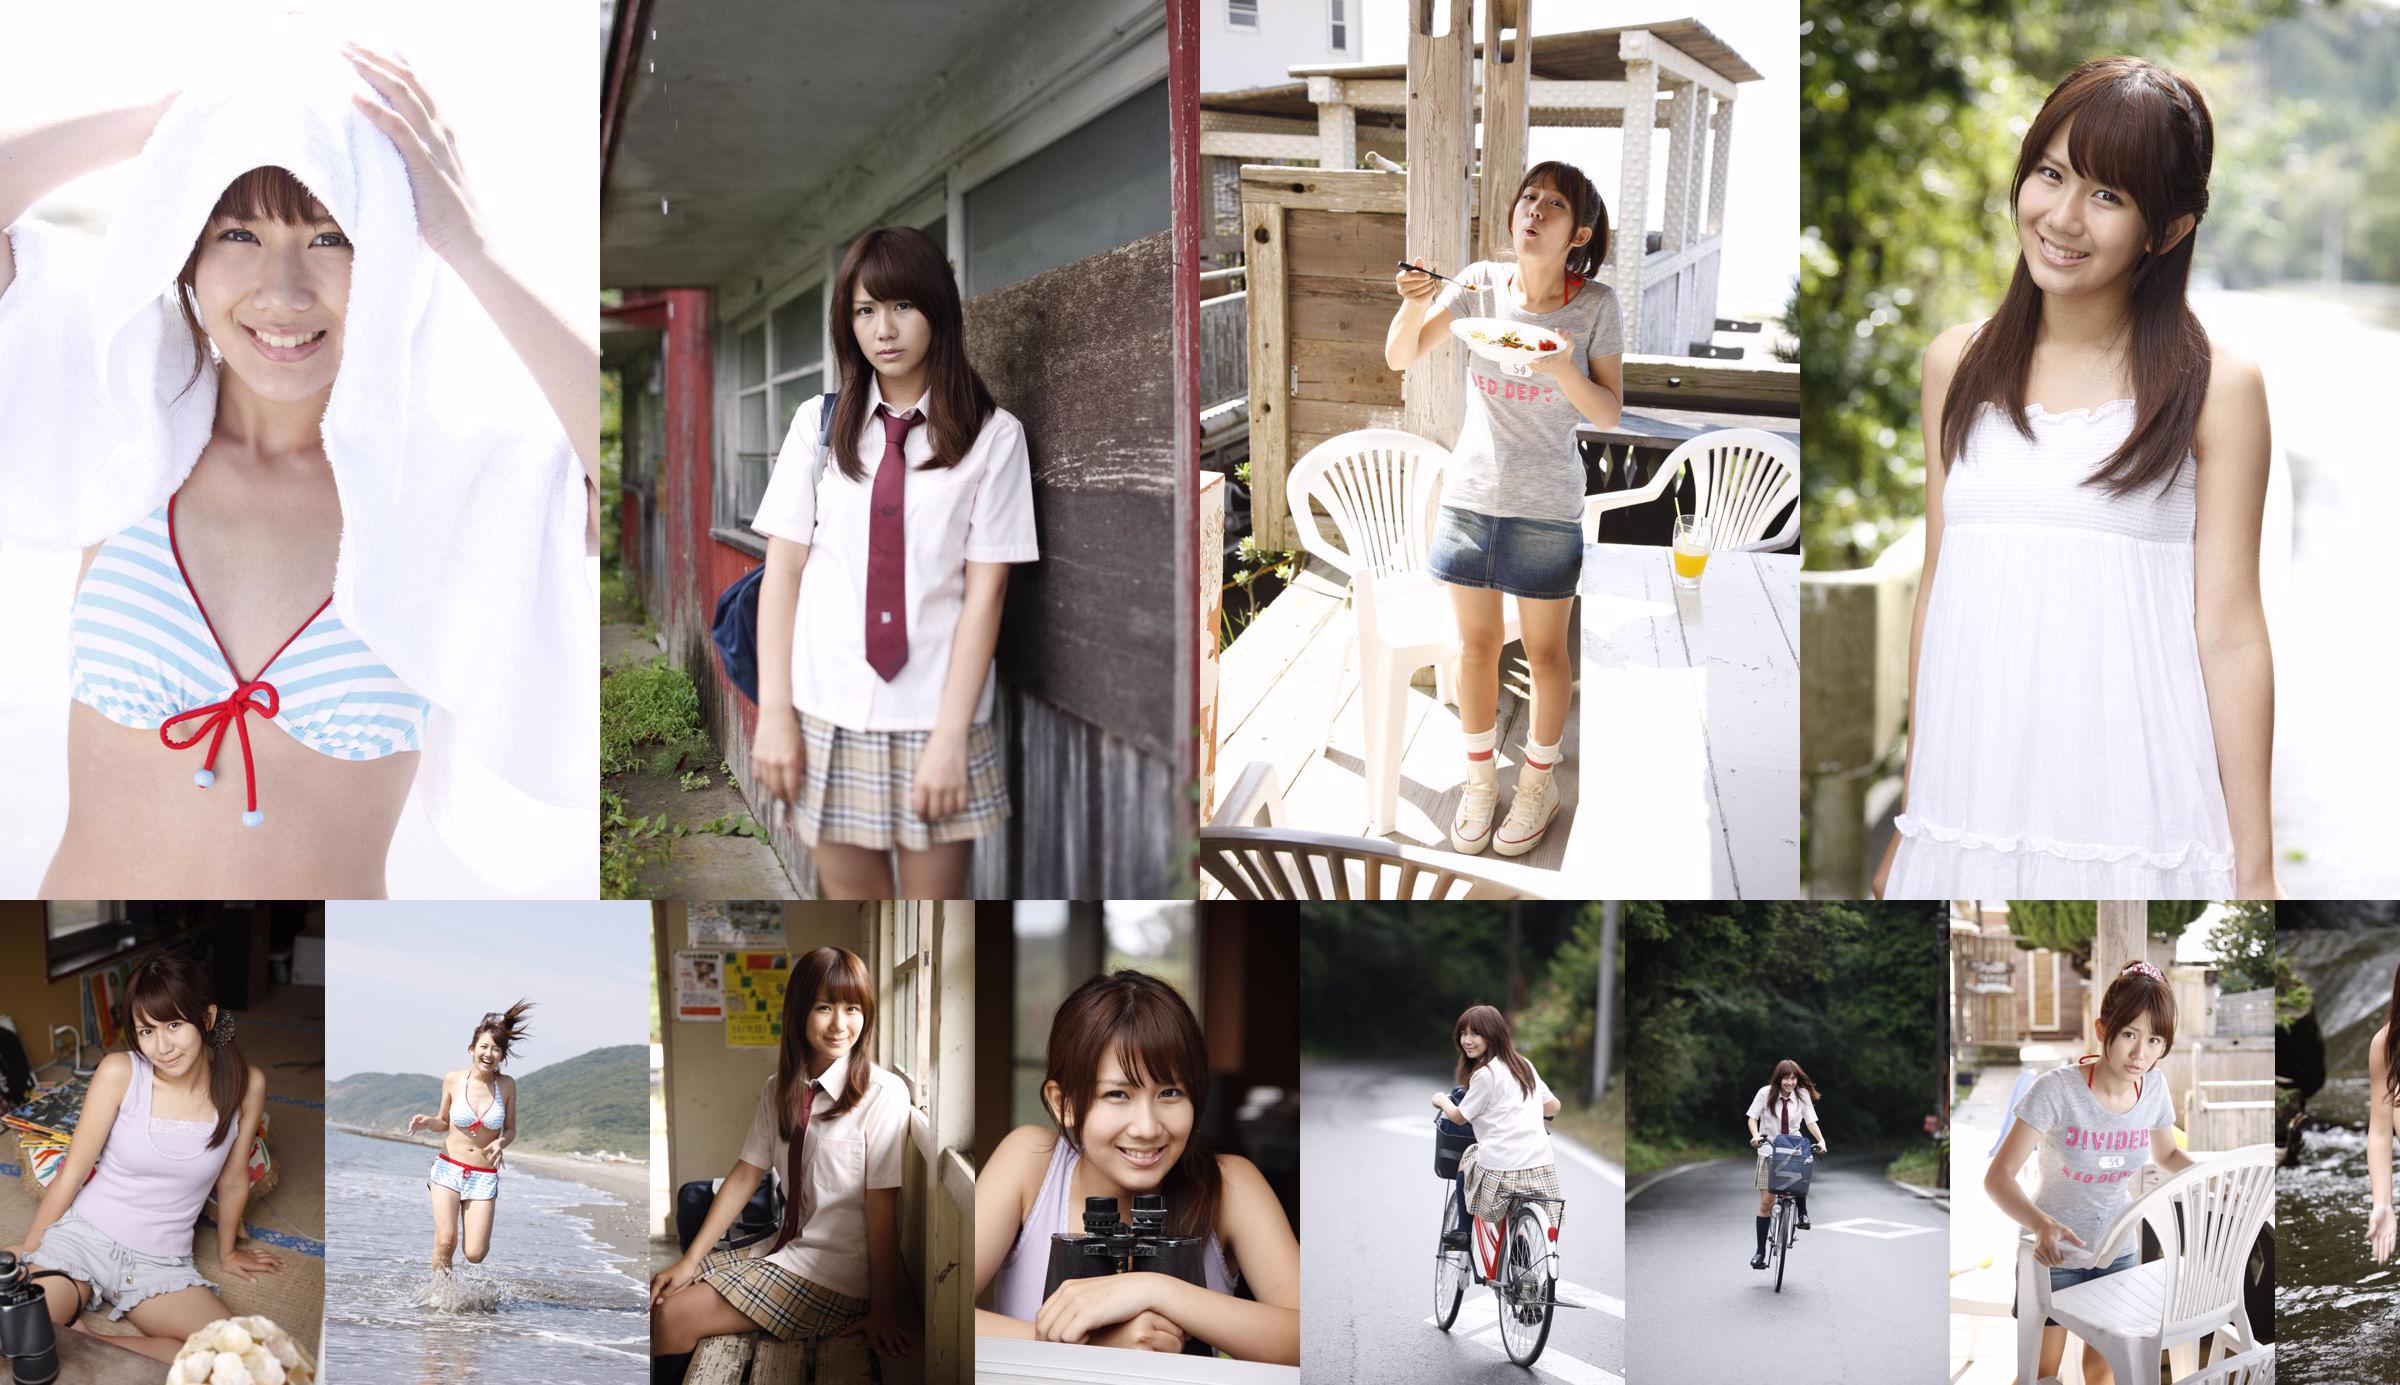 Okai Chisato Chisato Okai / Chisato Okai [Bonjour!  No.ad5fad Page 1